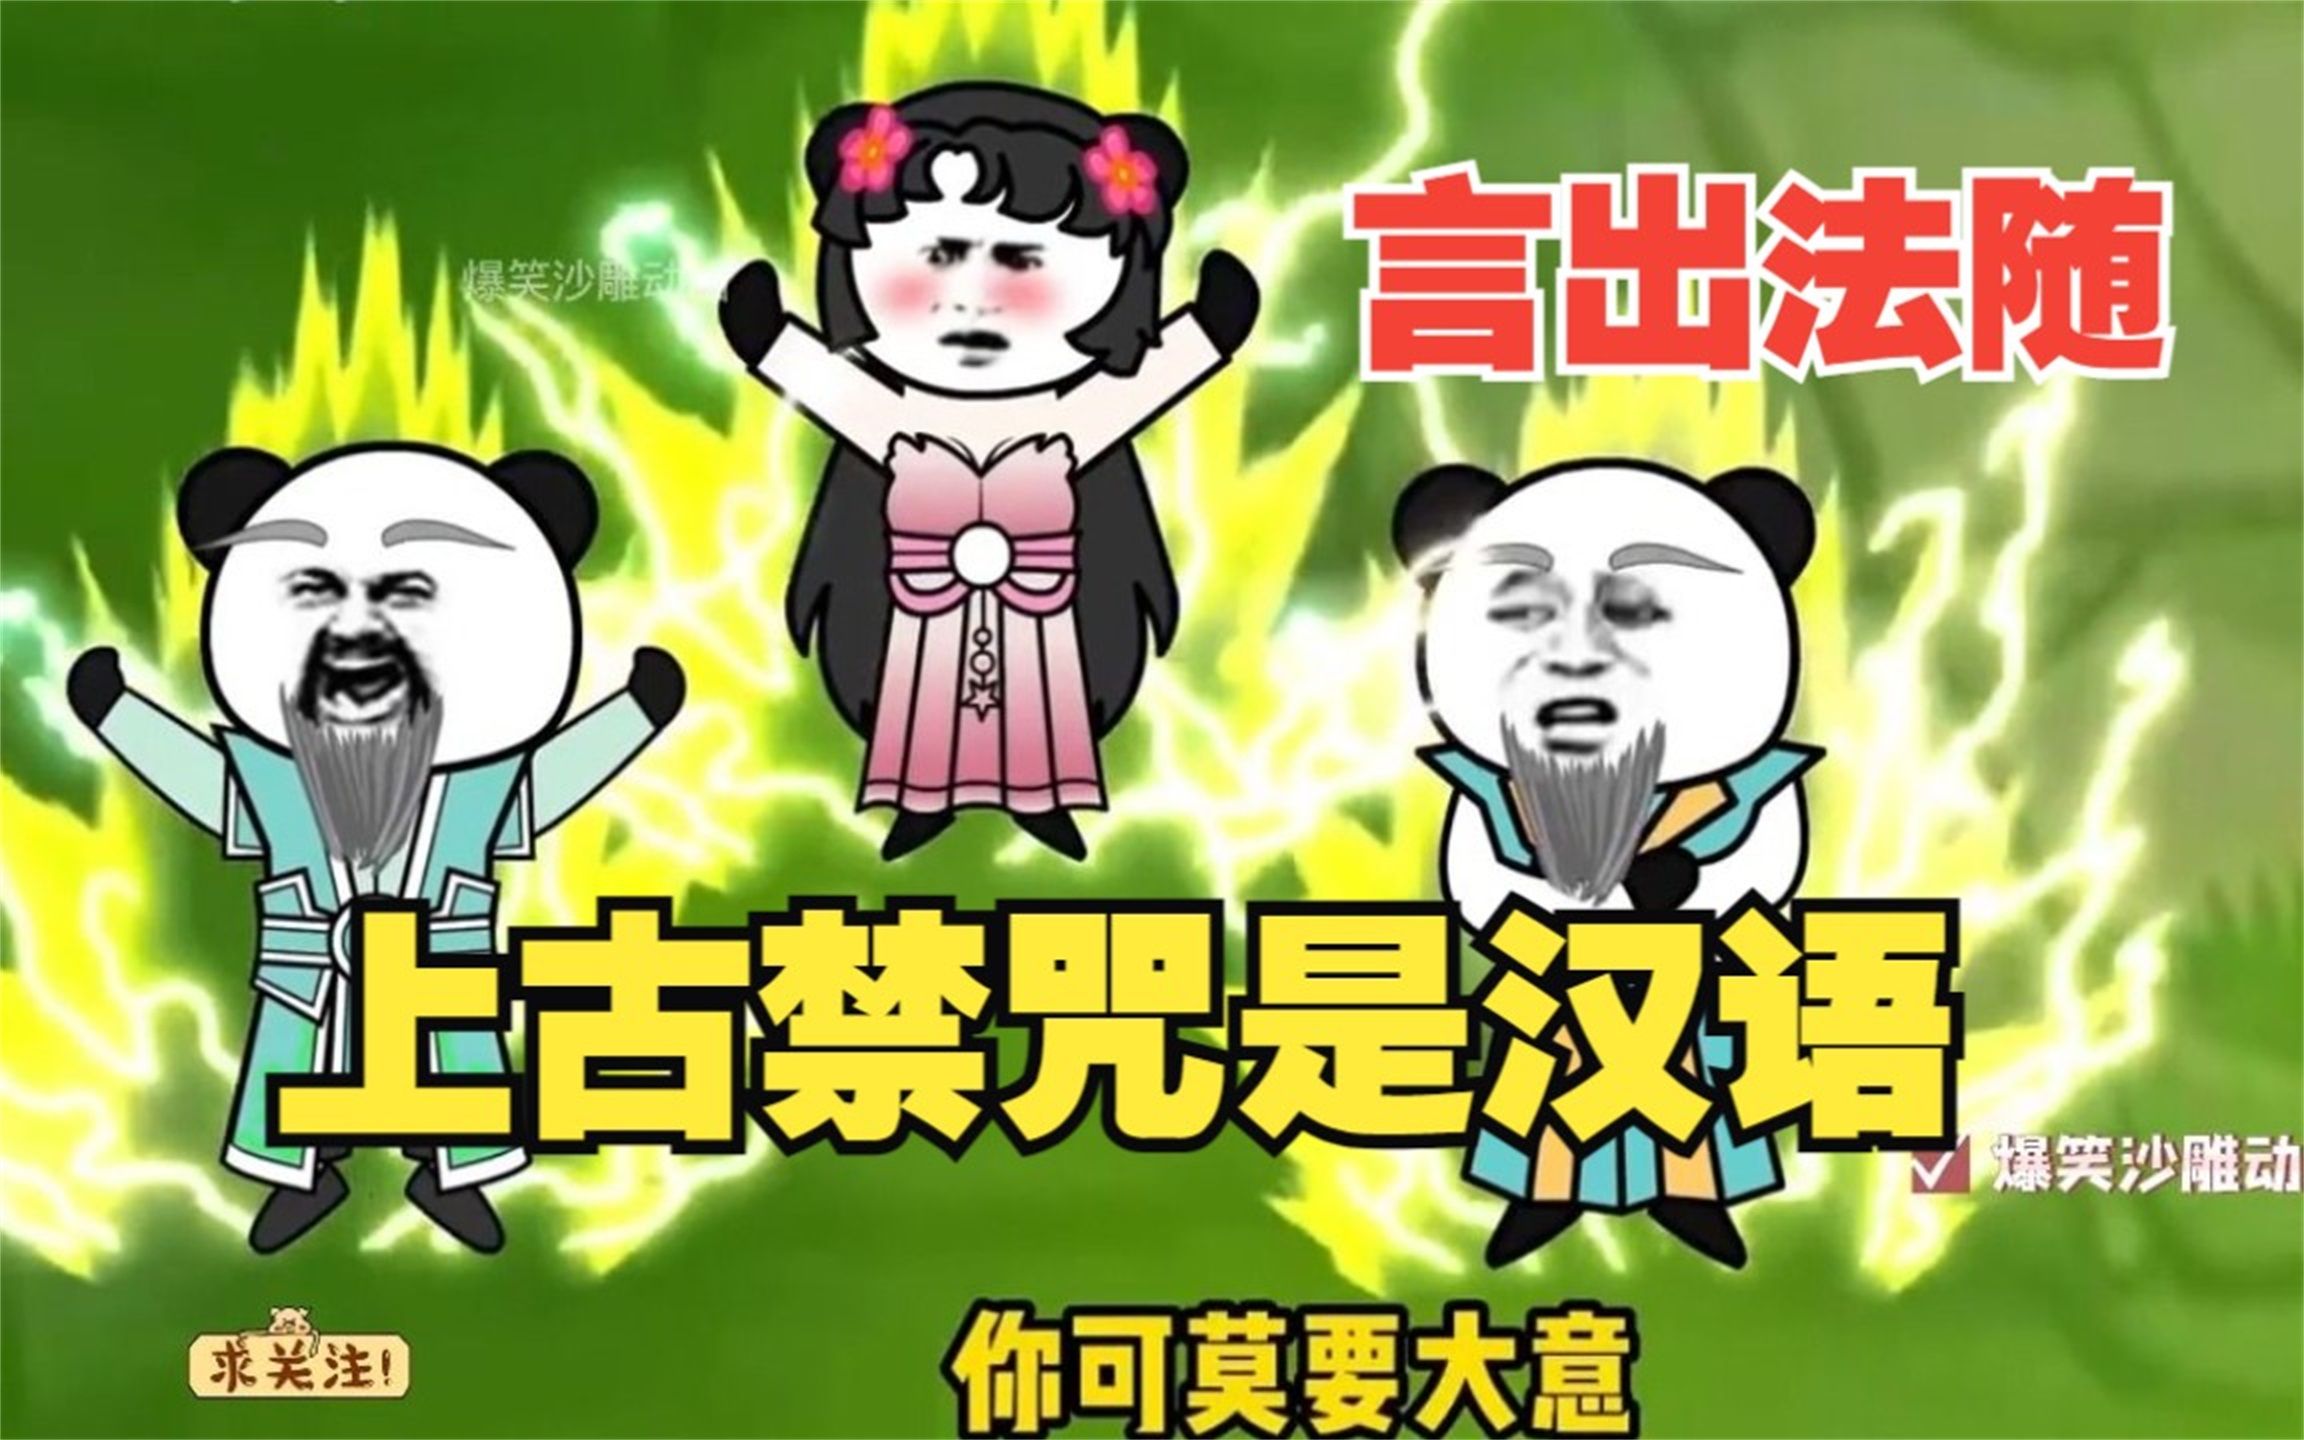 一口气看完沙雕动画《上古禁咒是汉语的世界》超搞笑沙雕动画